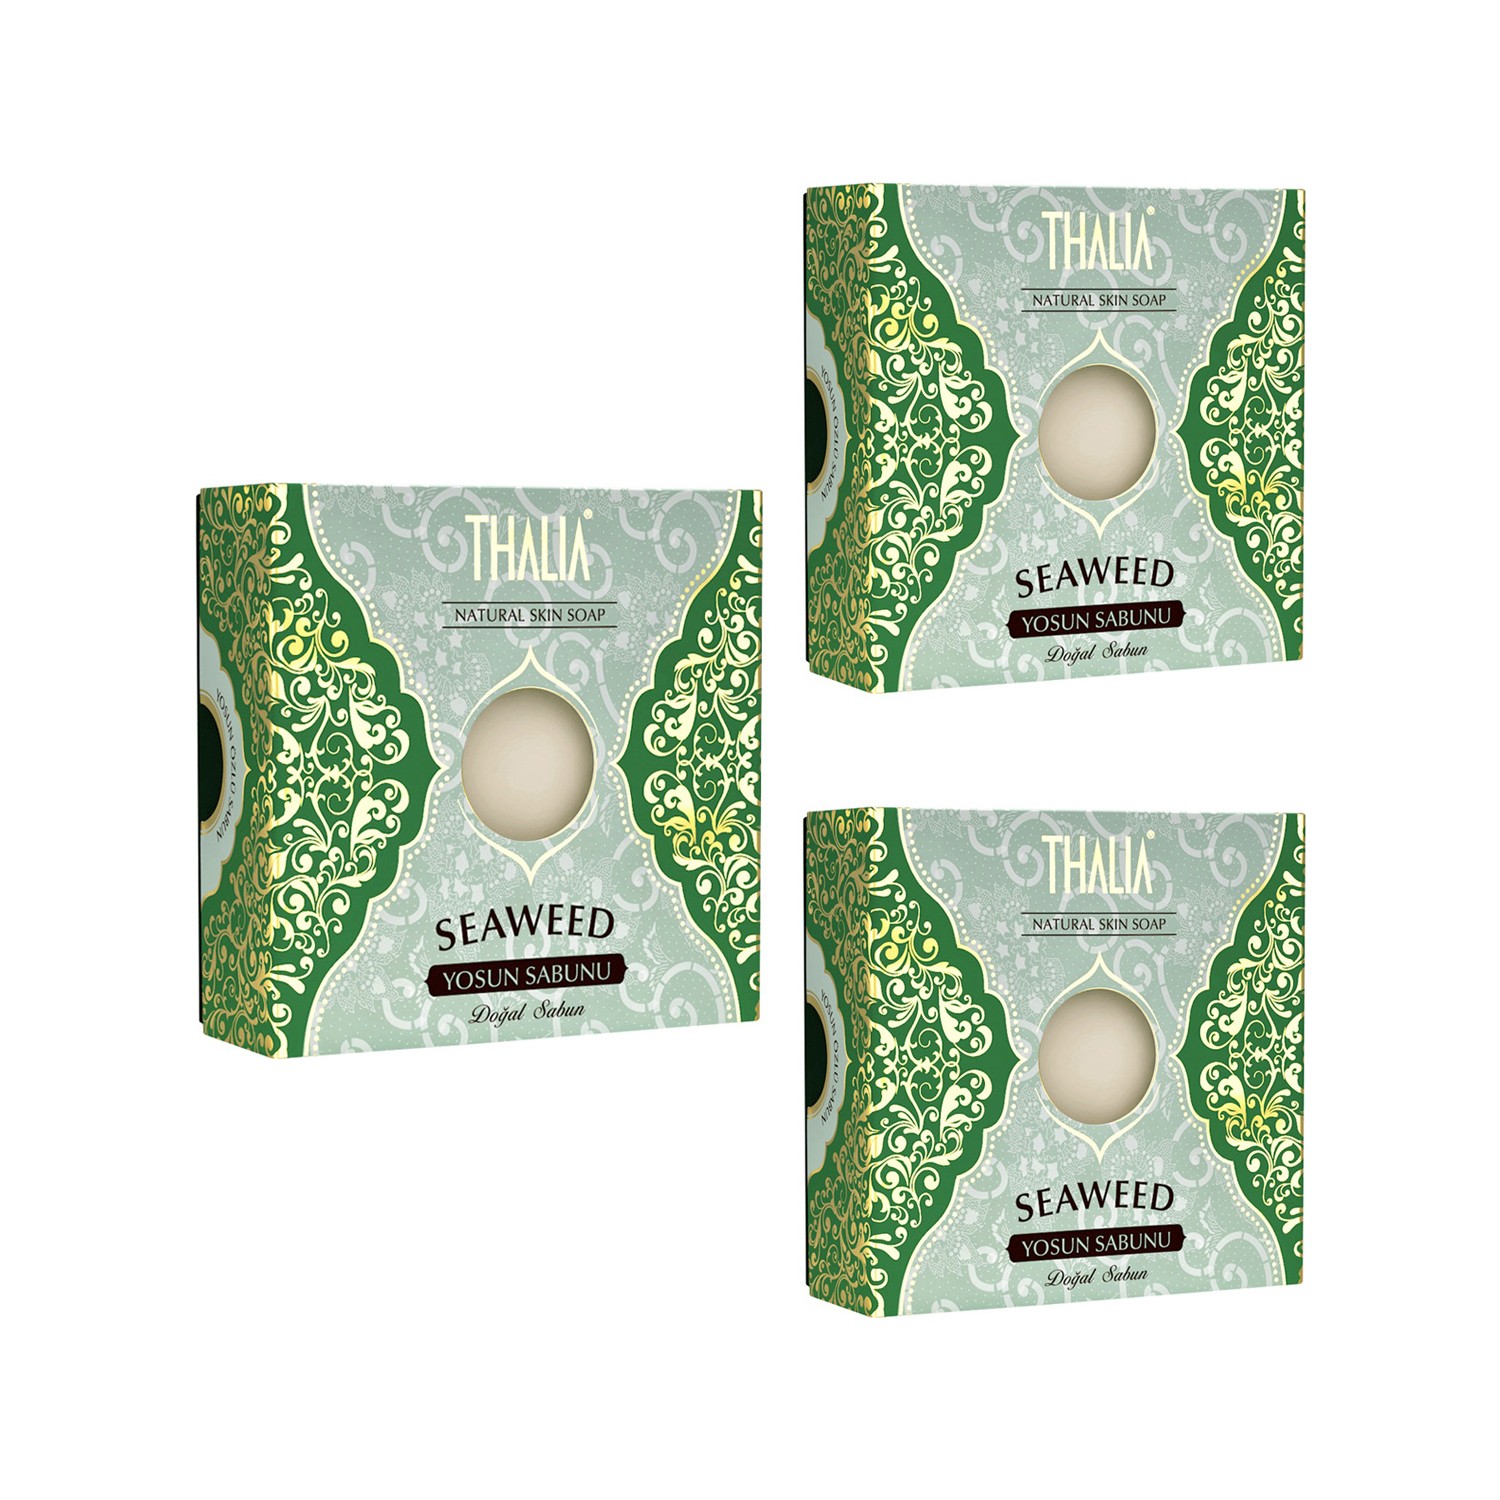 мыло thalia натуральное с экстрактом козьего молока 3 упаковки Натуральное мыло Thalia с морскими водорослями, 3 x 125 г